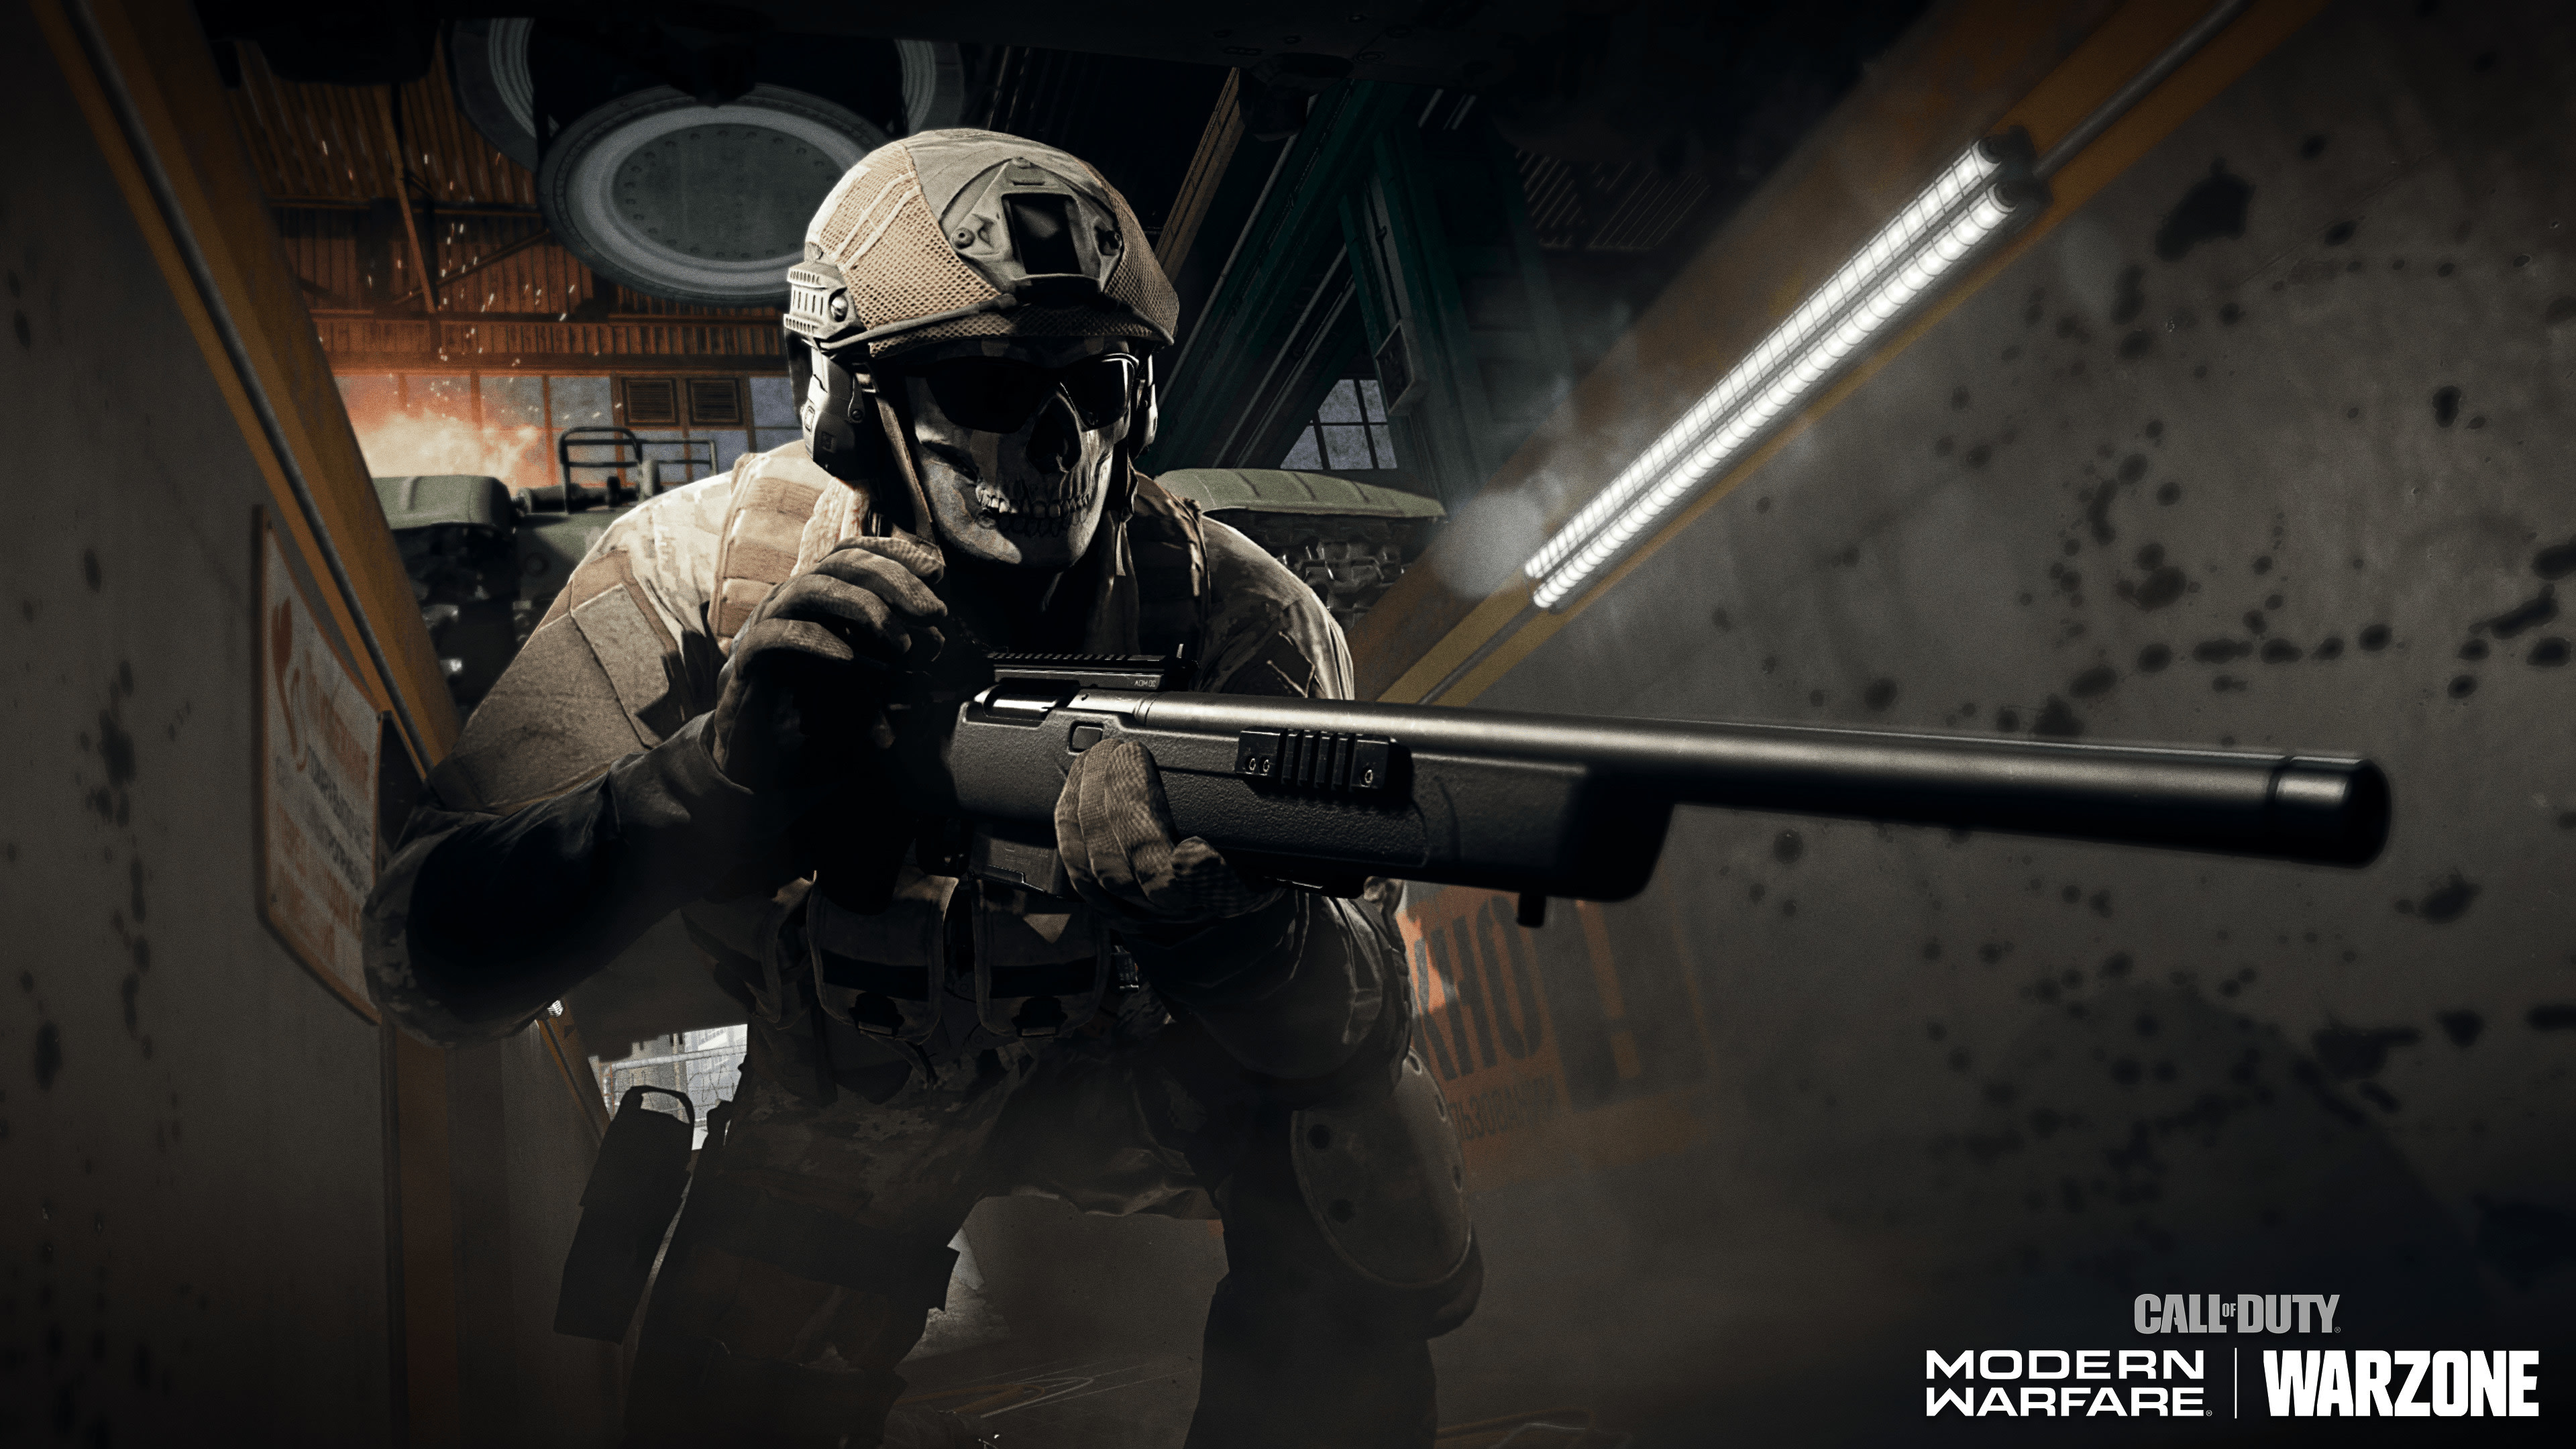 Call of Duty: Modern Warfare Wallpaper 4K, Call of Duty Warzone, Online ...